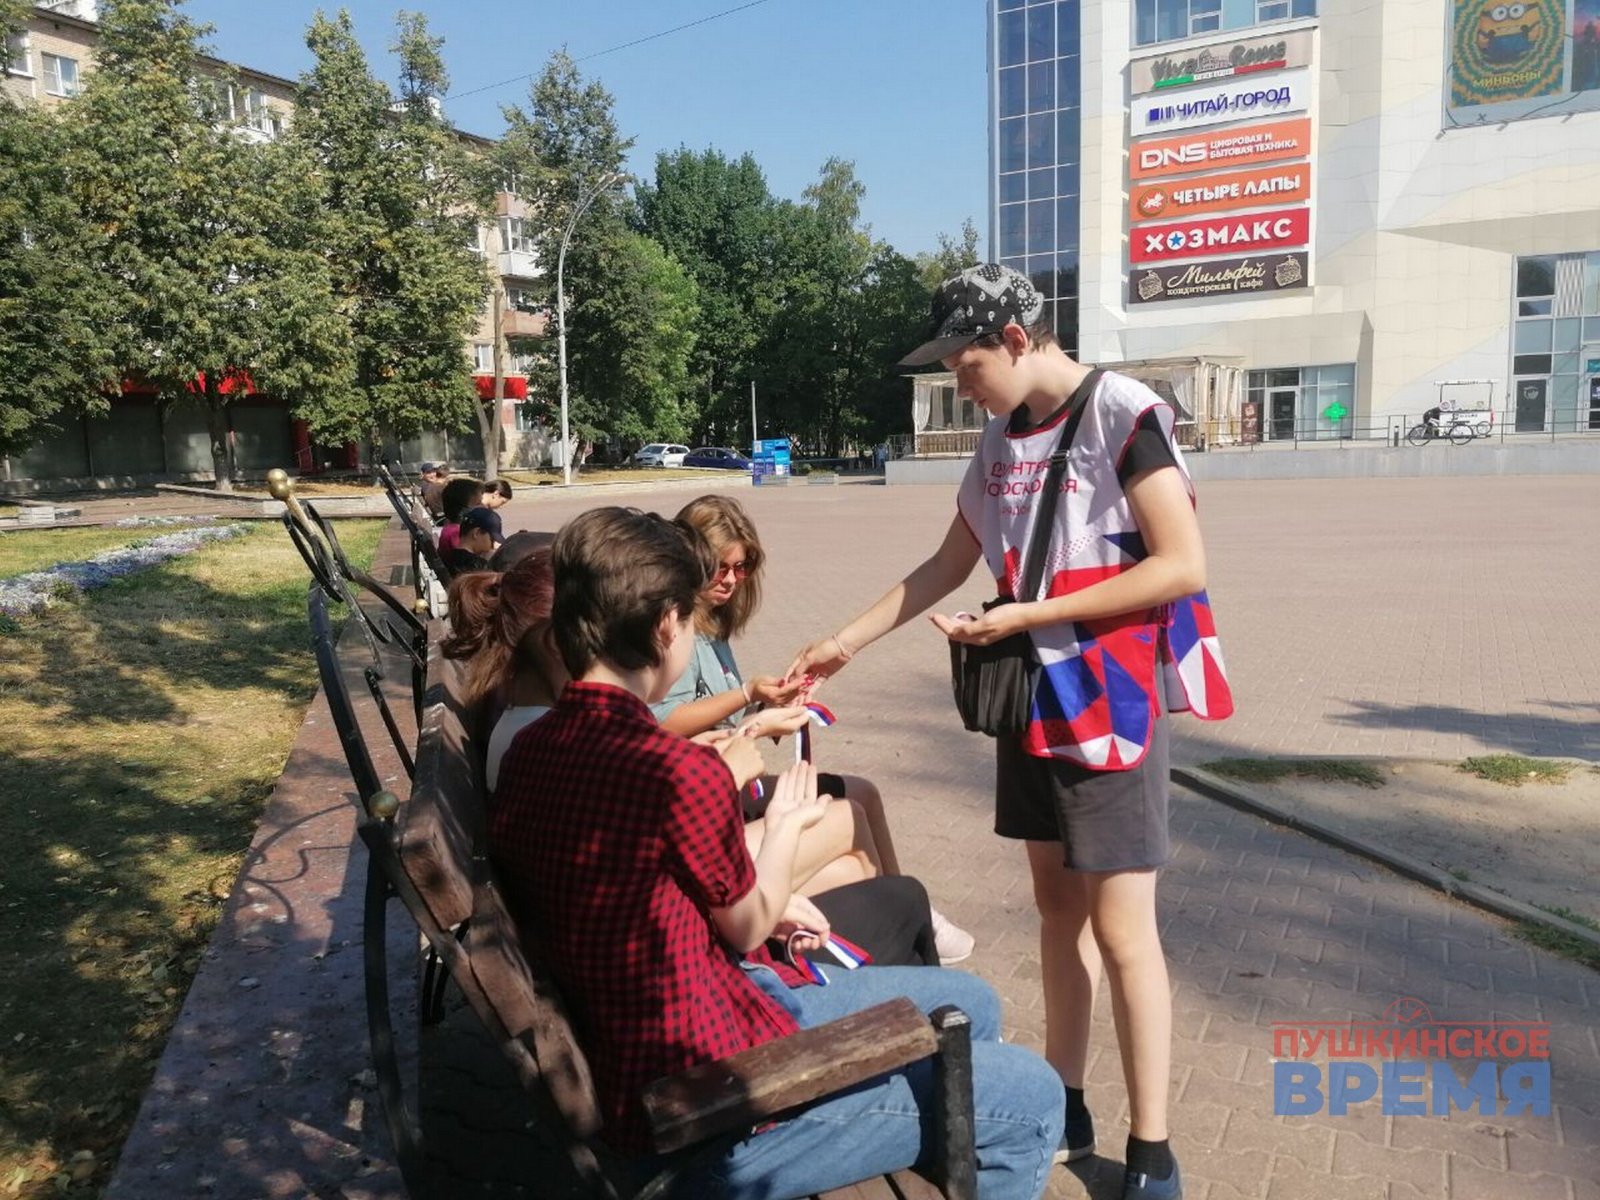 Несколько тысяч ленточек-триколоров раздадут в Пушкино ко Дню российского флага 